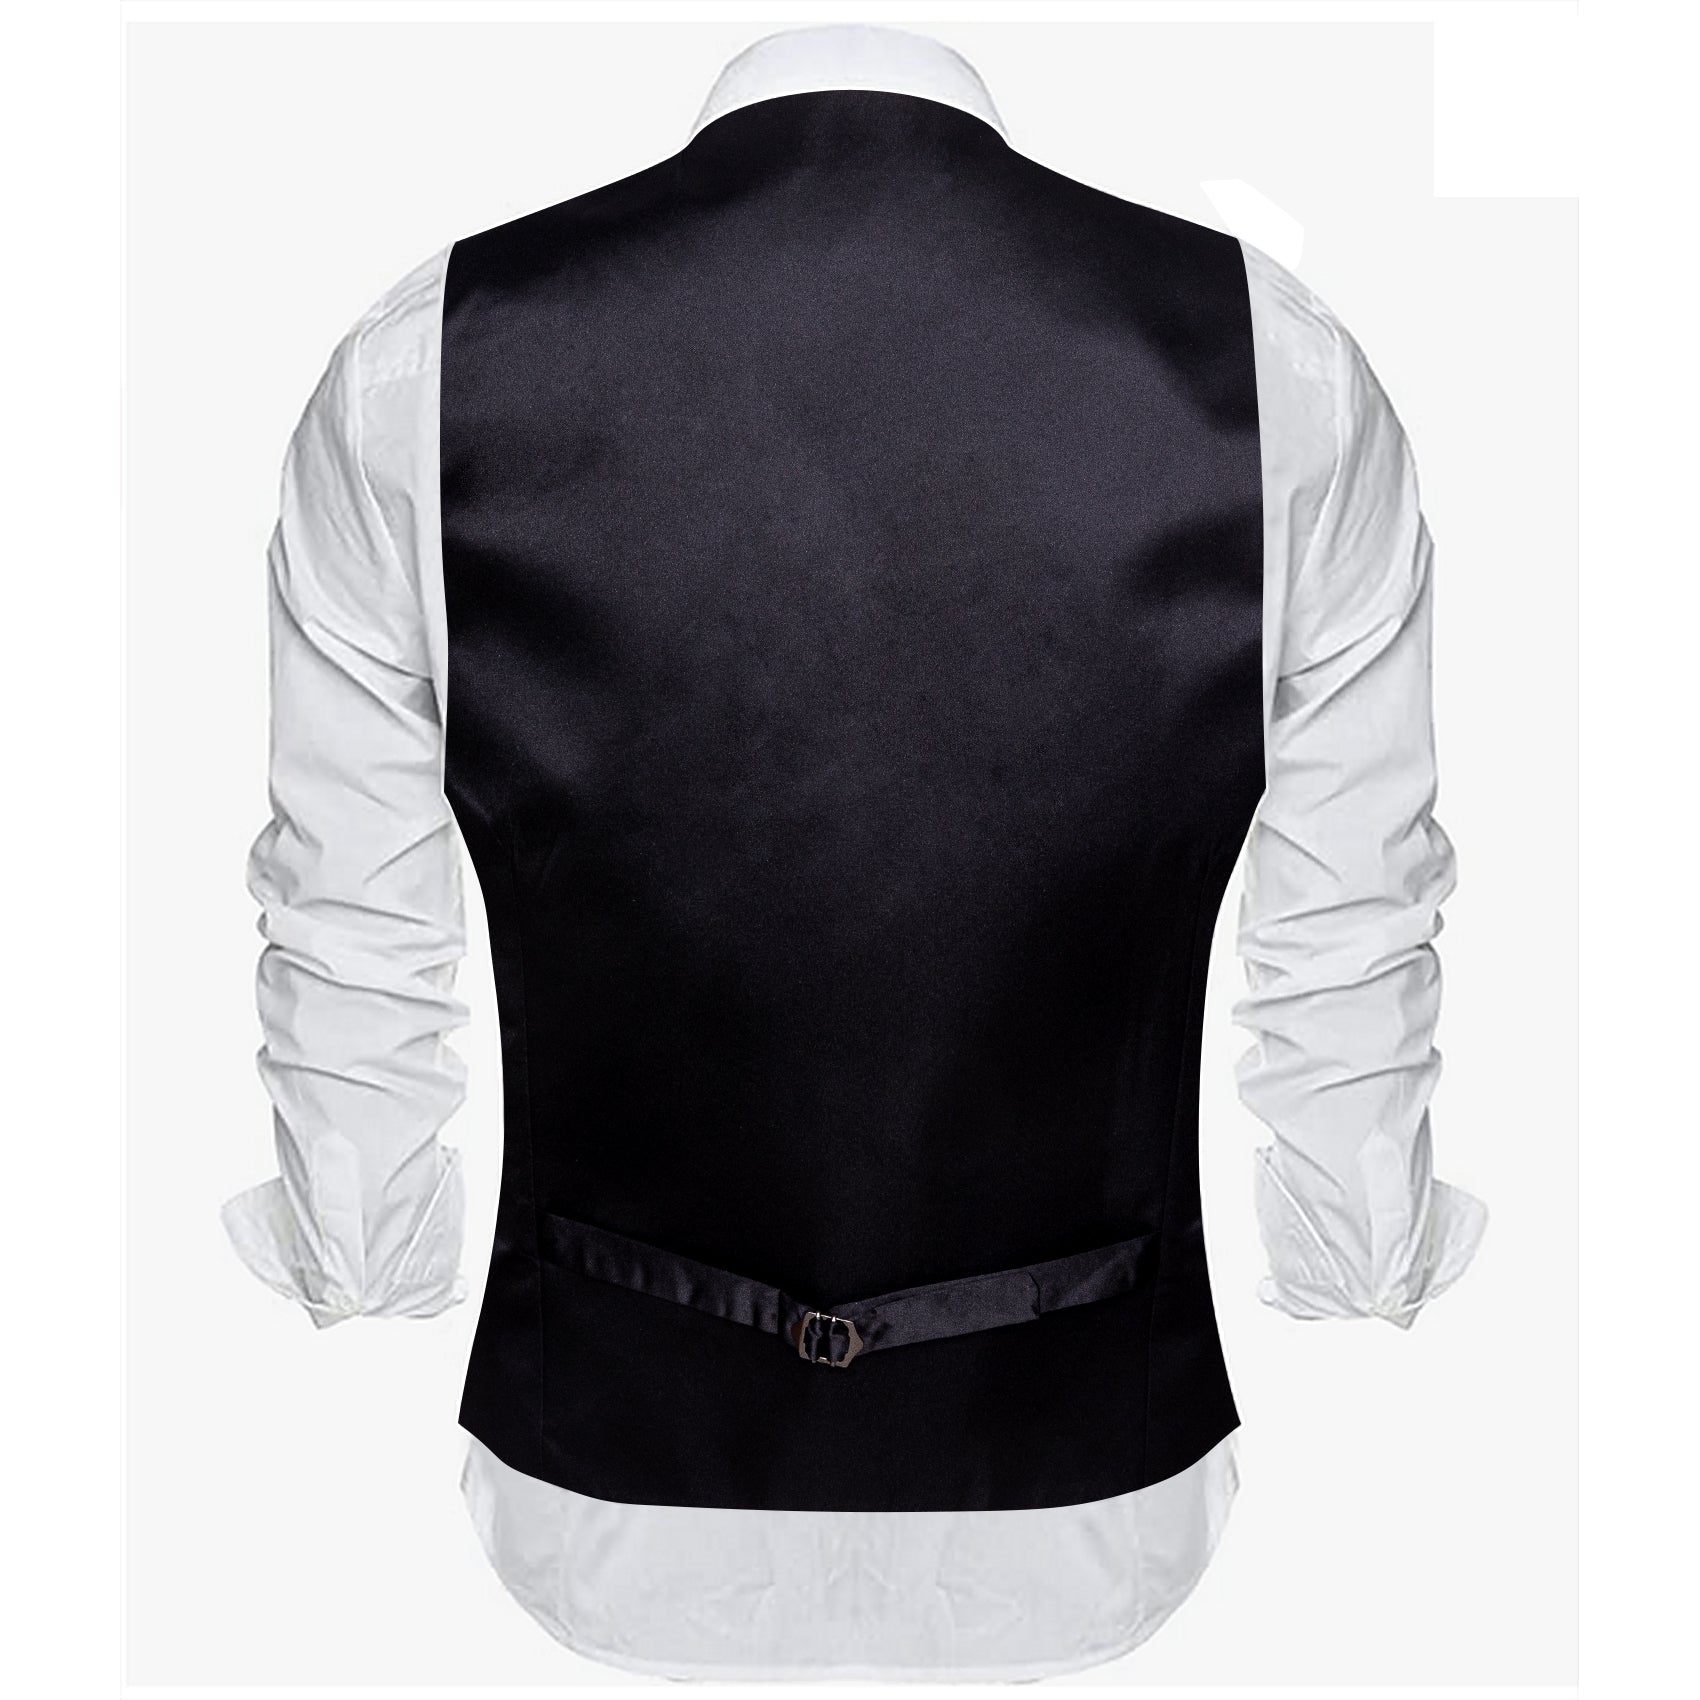 Barry.Wang Vest for Men Olive Green Solid V-Neck Waistcoat Suit Vest for Business